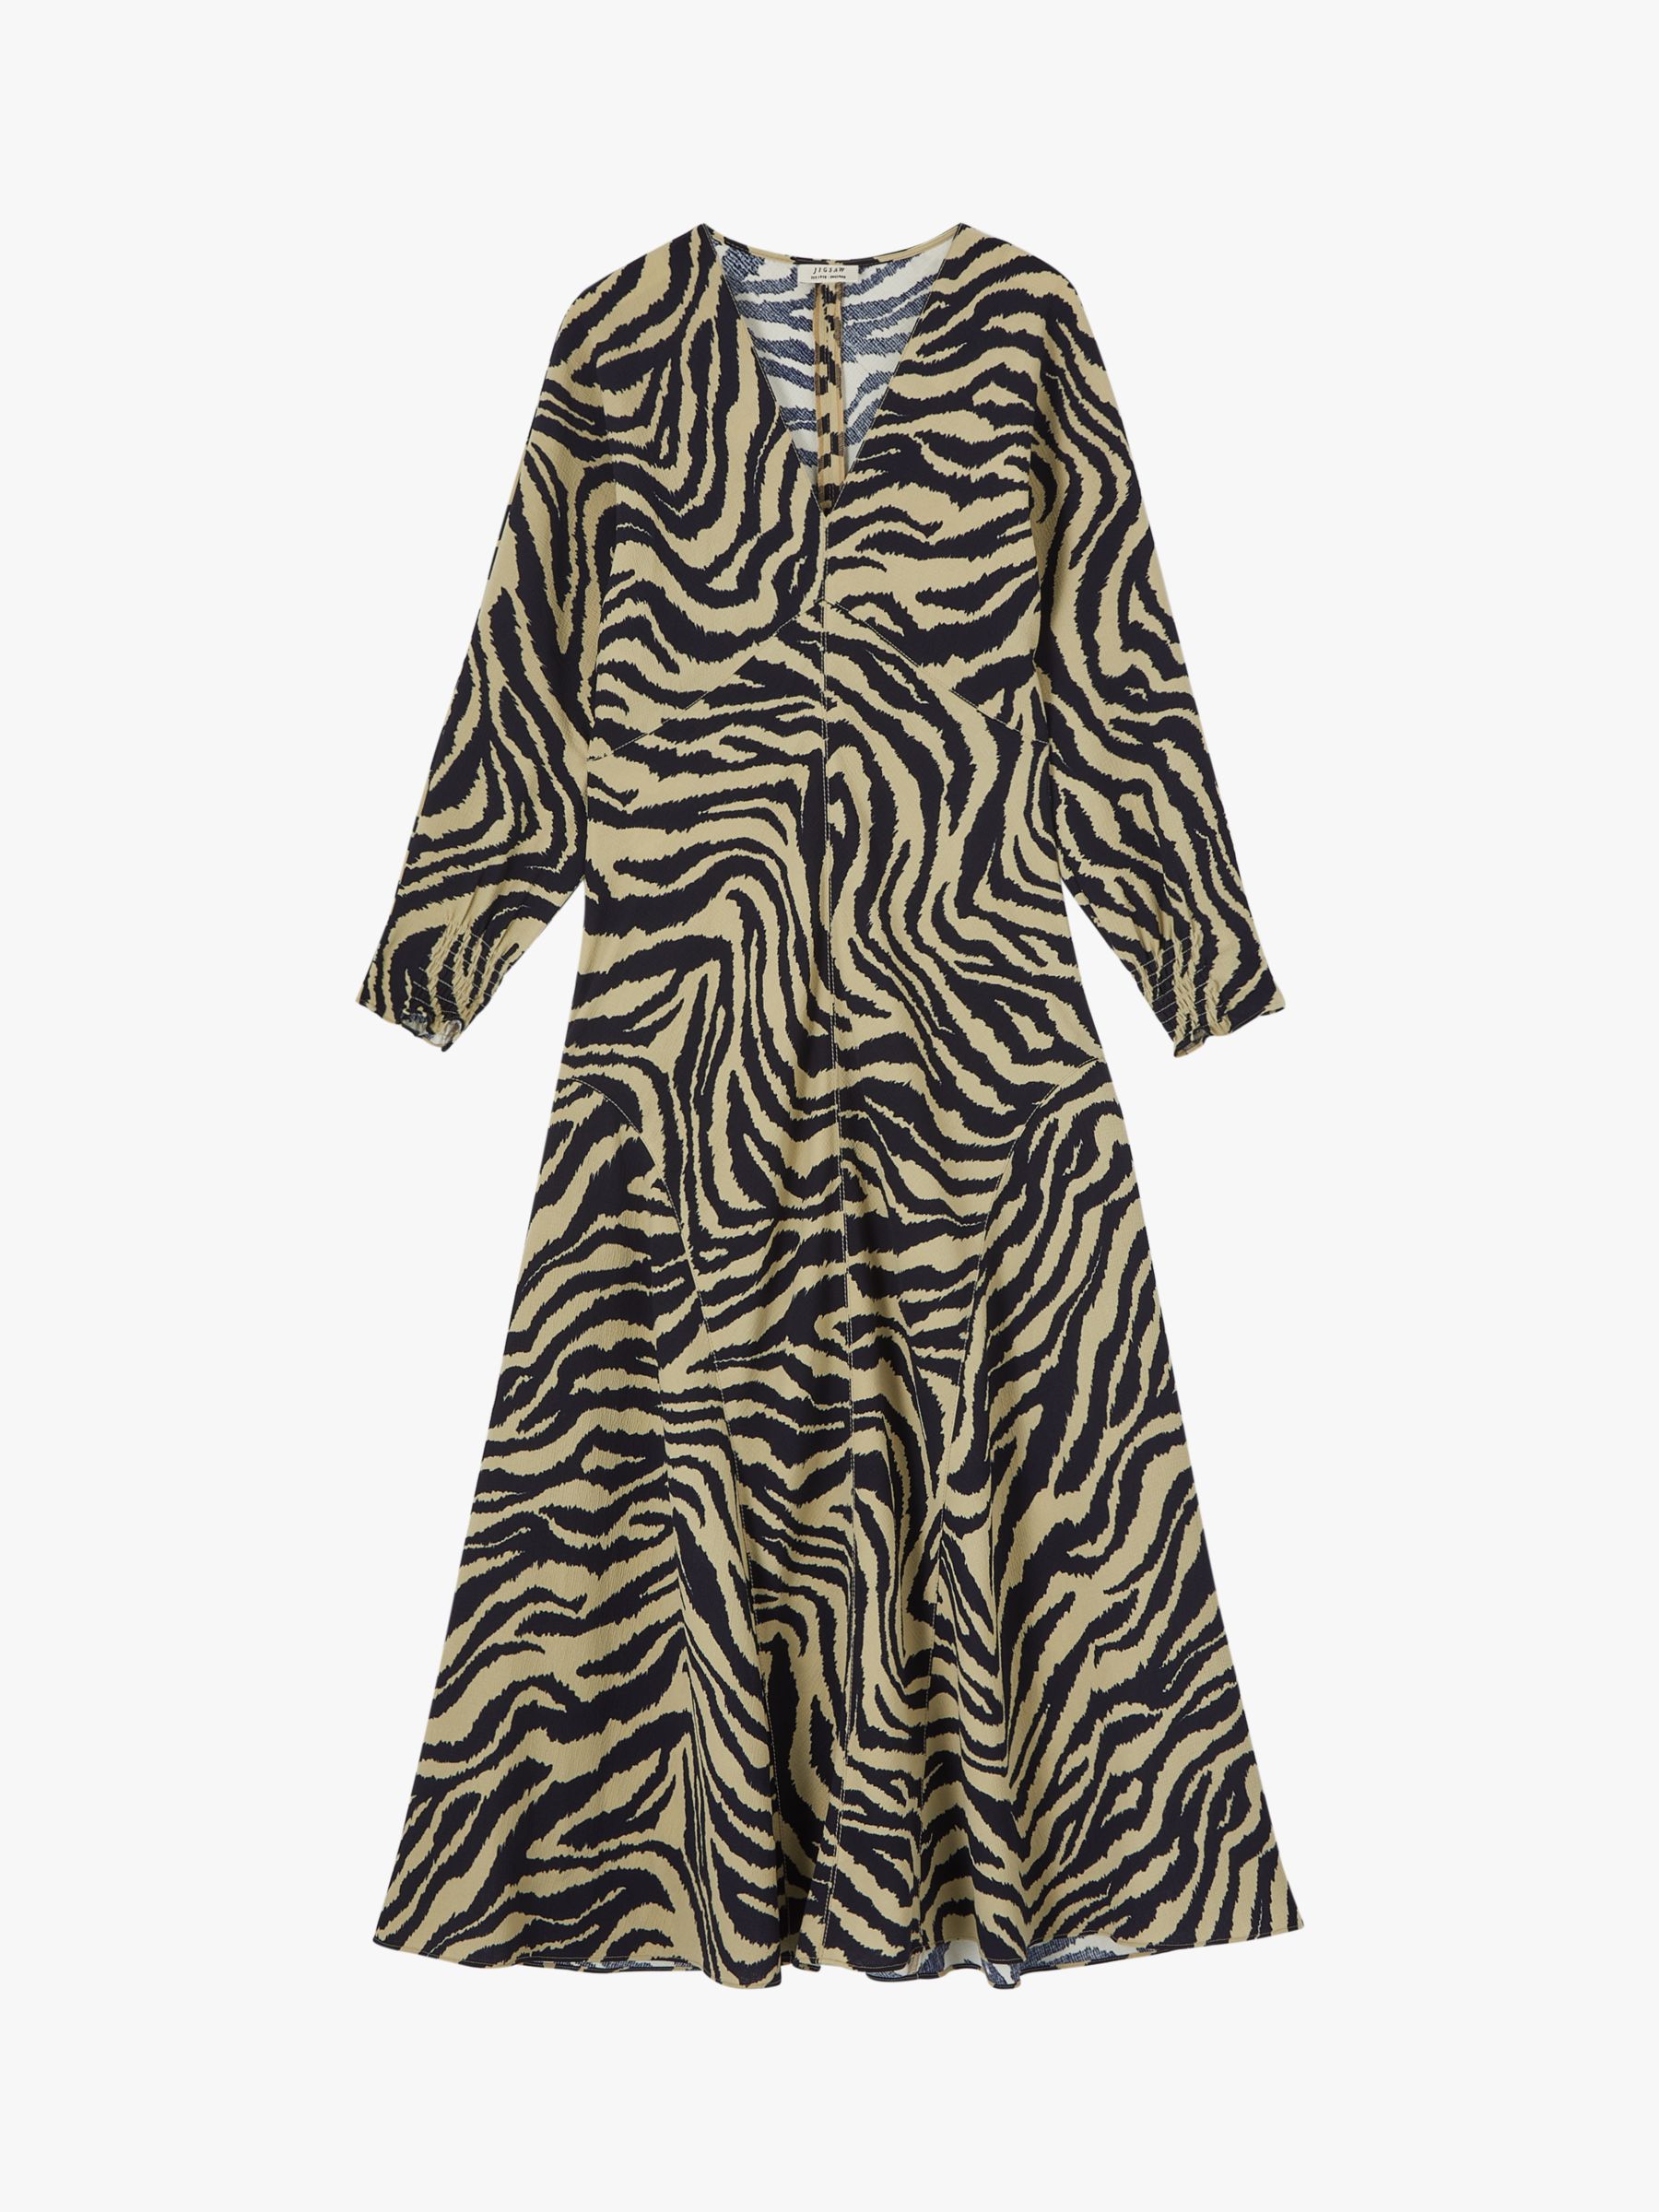 Jigsaw Ikat Zebra Print Midi Dress, Khaki/Black